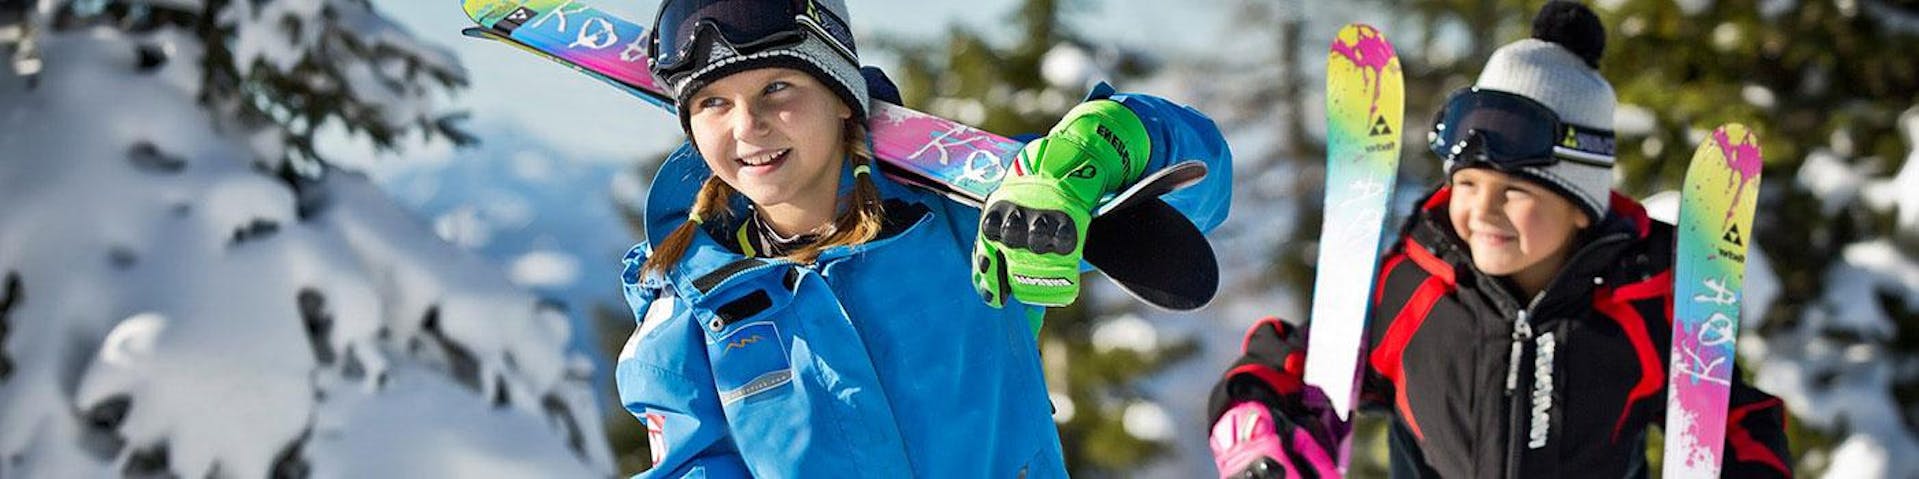 Ein junges Mädchen und ein junger Bub tragen ihre Ski um mit ihrem Skikurs mit der Schneesportschule Black Forest Magic im Skigebiet Feldberg beginnen zu können.